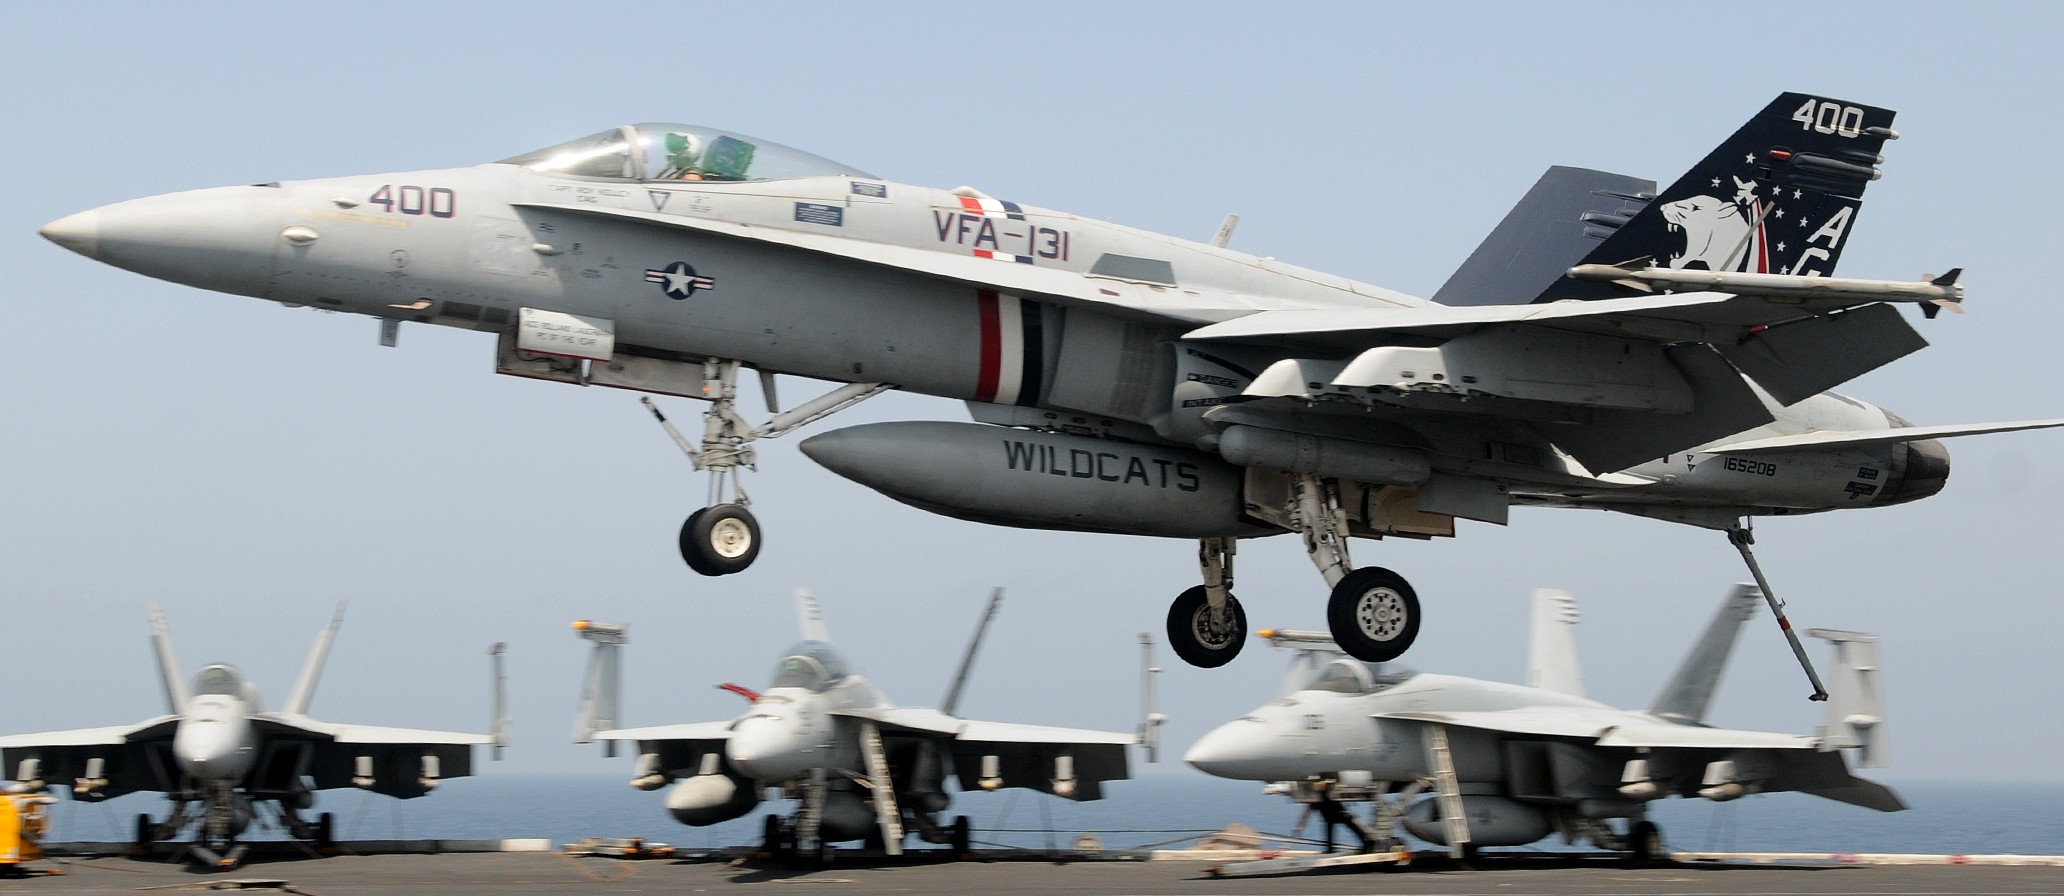 vfa-131 wildcats strike fighter squadron f/a-18c hornet cvw-7 uss dwight d. eisenhower cvn-69 2010 83